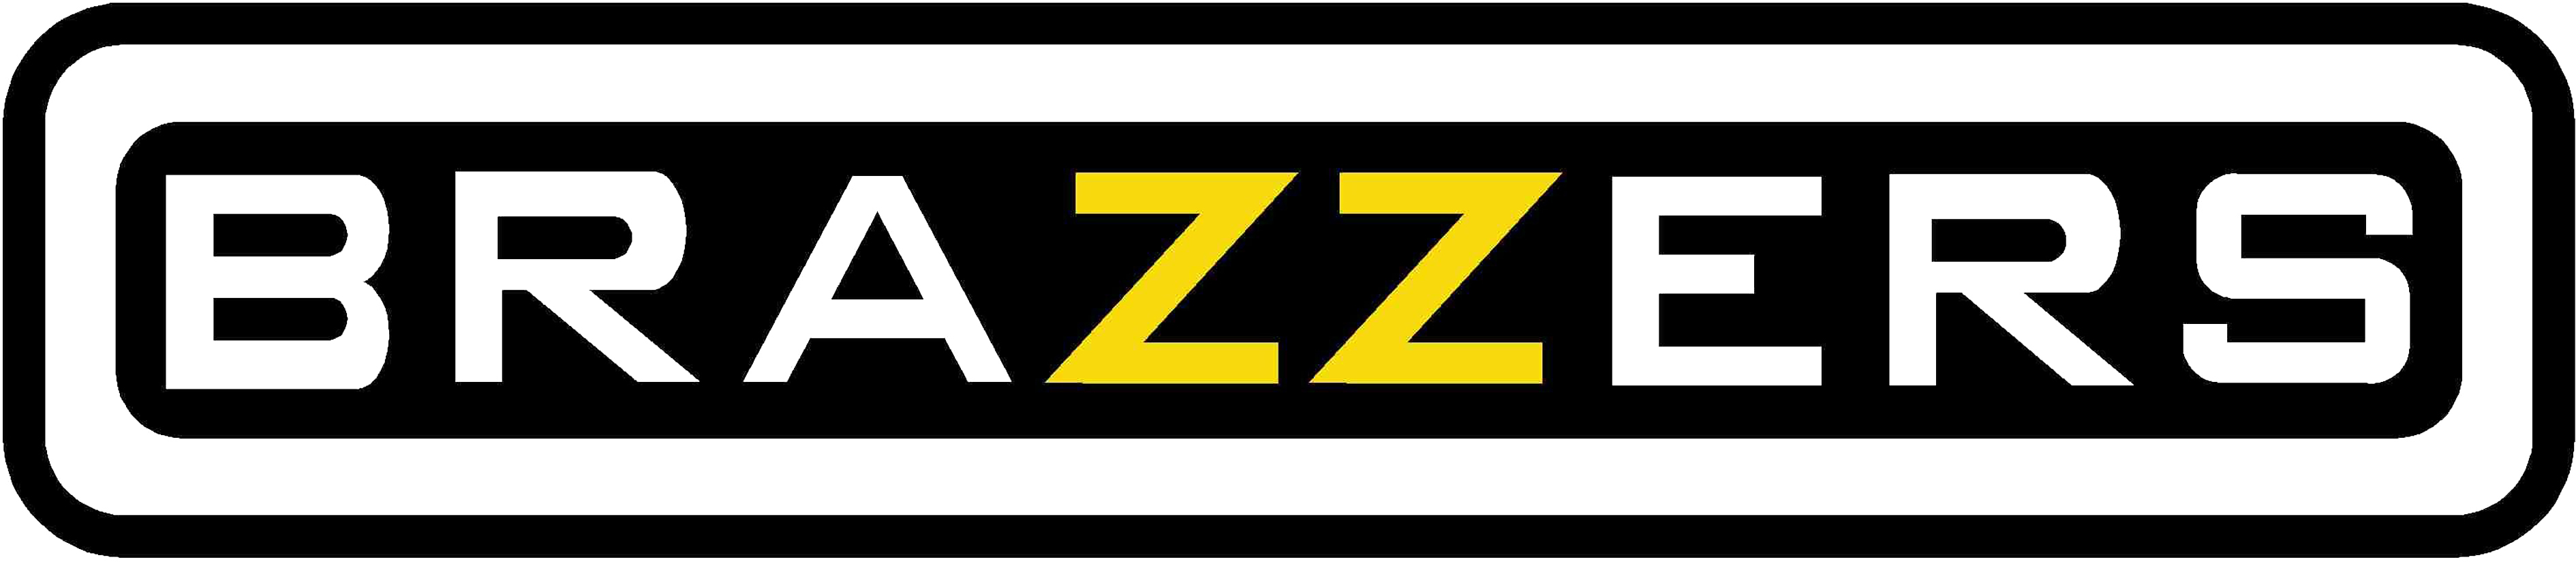 Наклейка на авто "Brazzers", 32*7см, цвет черный - купить по выго...